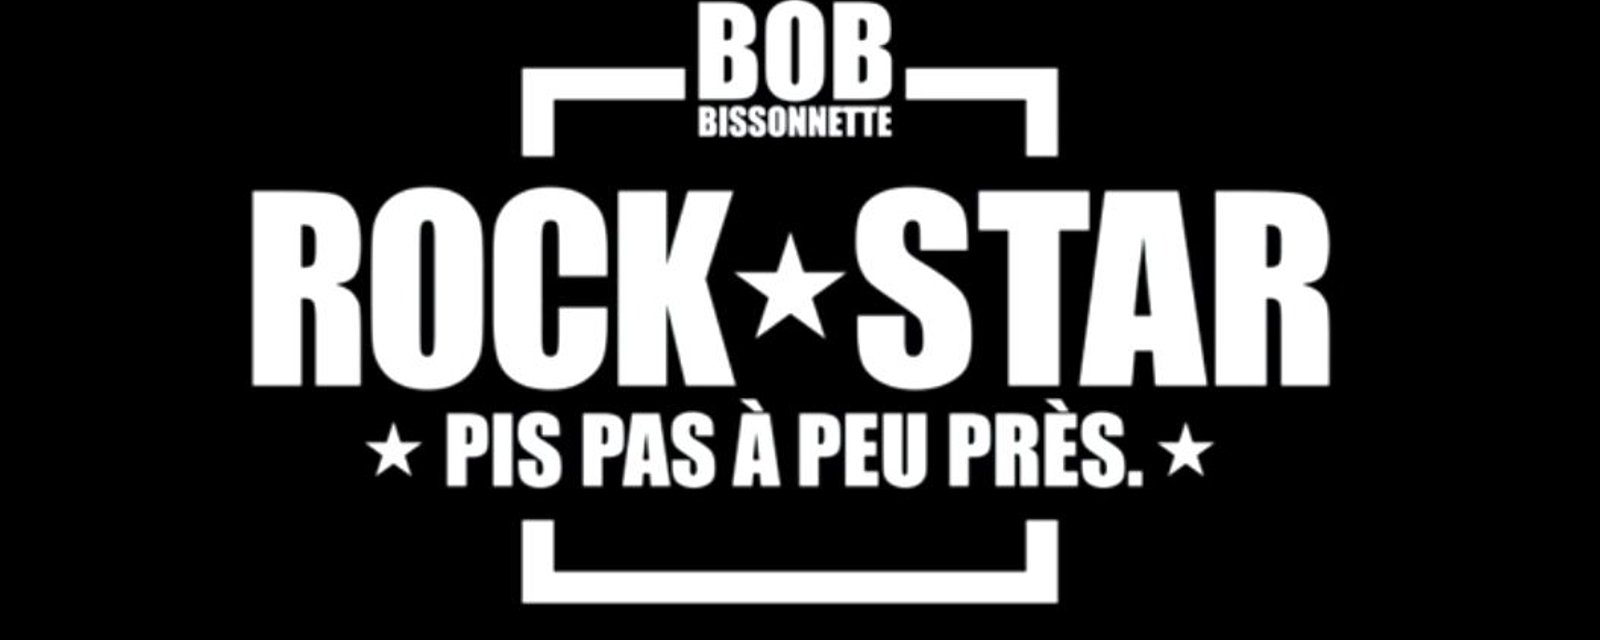 Un documentaire sur Bob Bissonnette sur le point de prendre l'affiche!